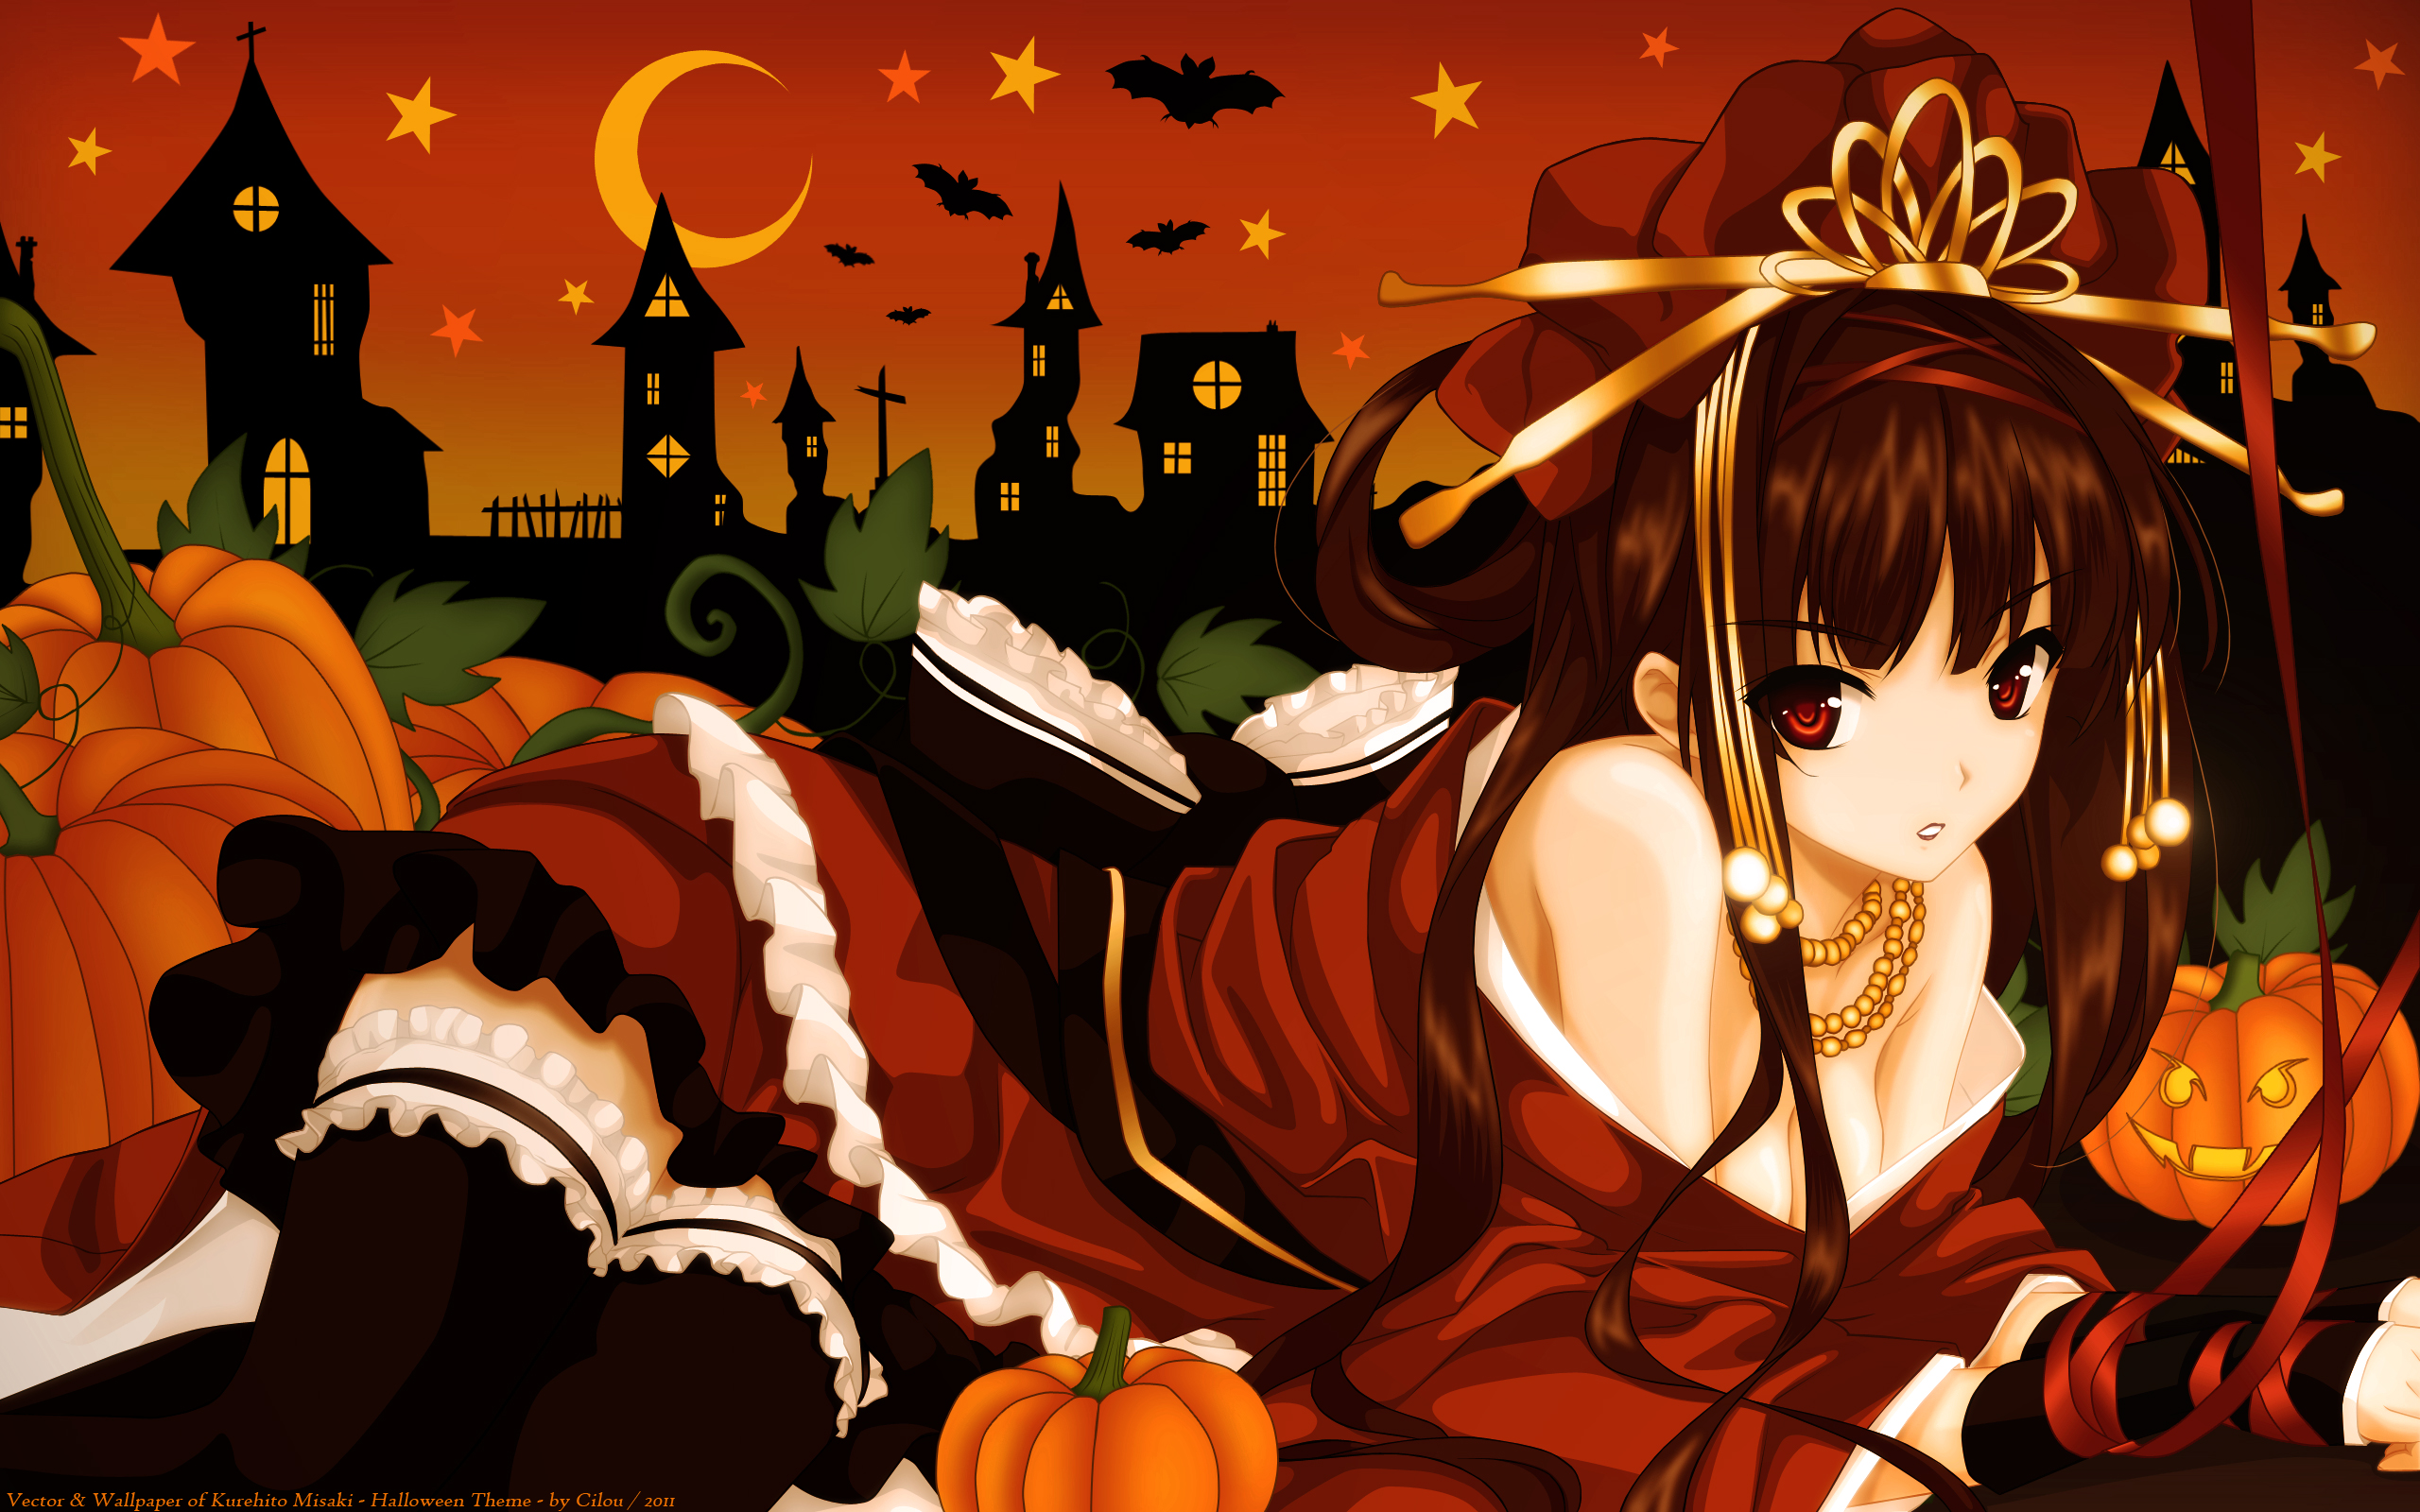 Kurehito Misaki Wallpaper: Halloween